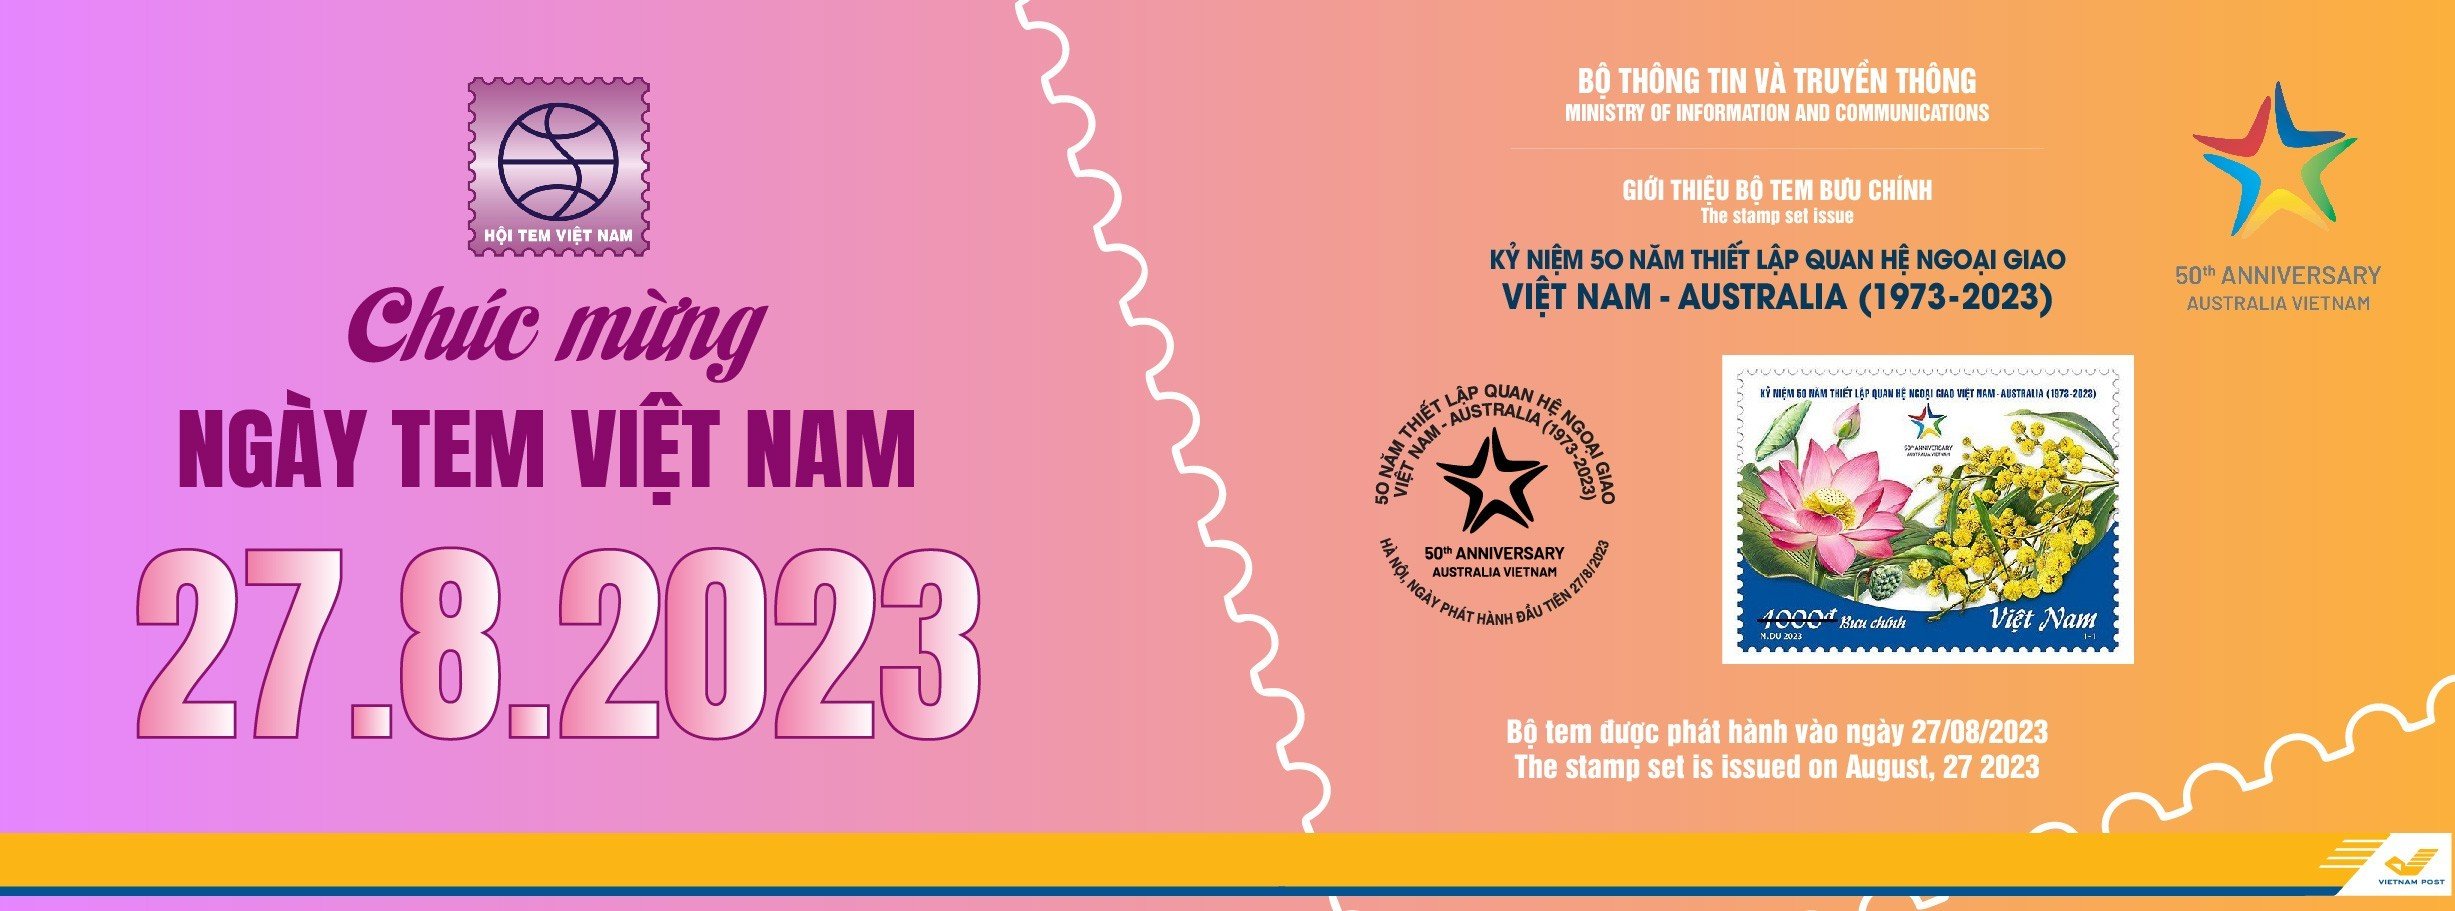 Phát hành bộ tem KN 50 năm thiết lập quan hệ ngoại giao Việt Nam - Australia (1973-2023)